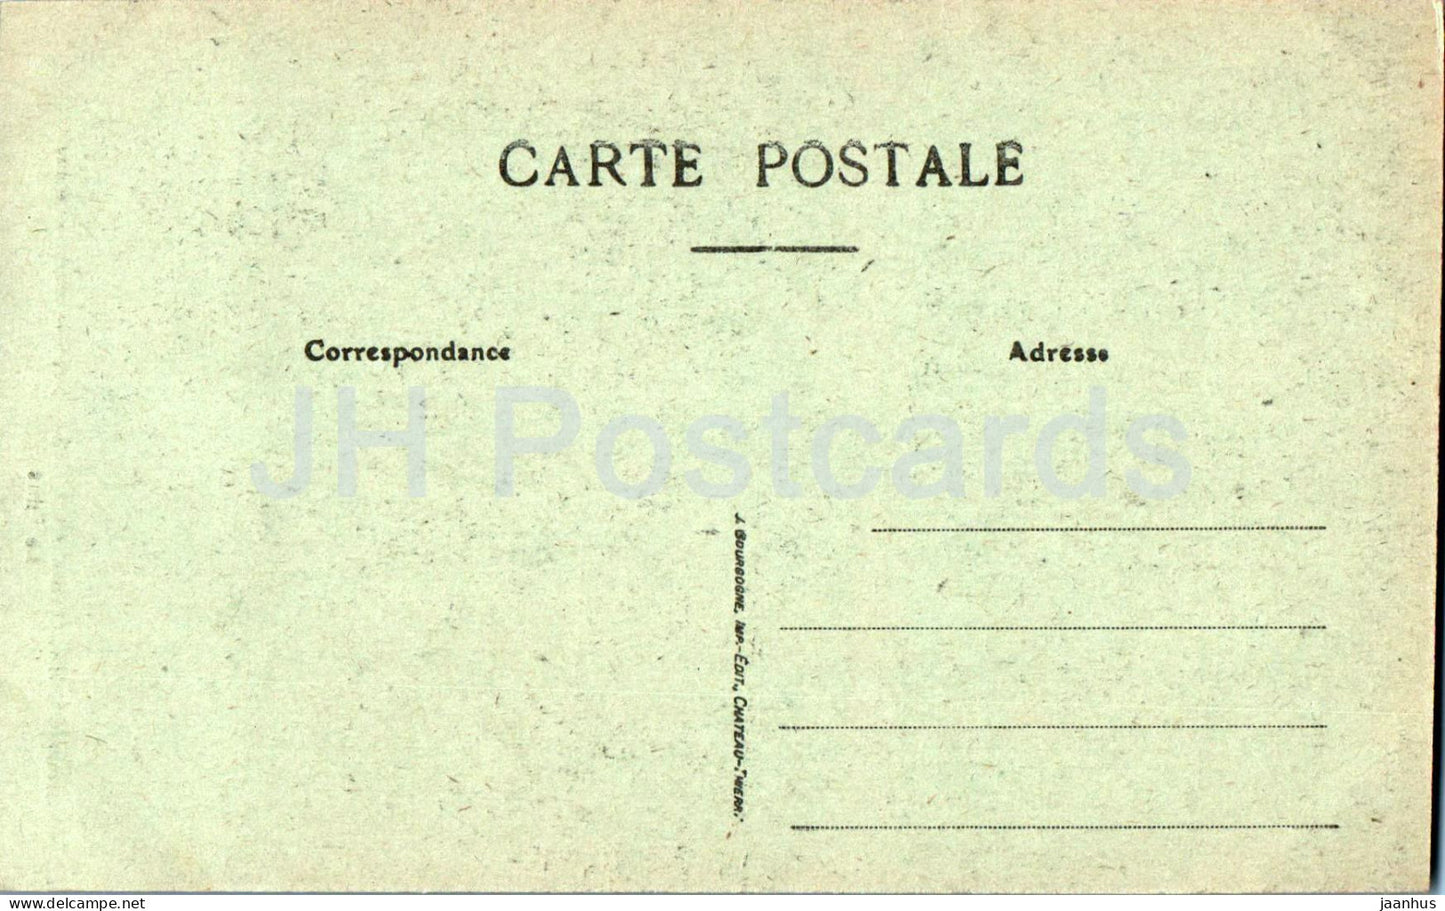 L'Epine - Environs de Chalons sur Marne - Notre Dame de Lepine - Le Puits - Kathedrale - alte Postkarte - Frankreich - unbenutzt 